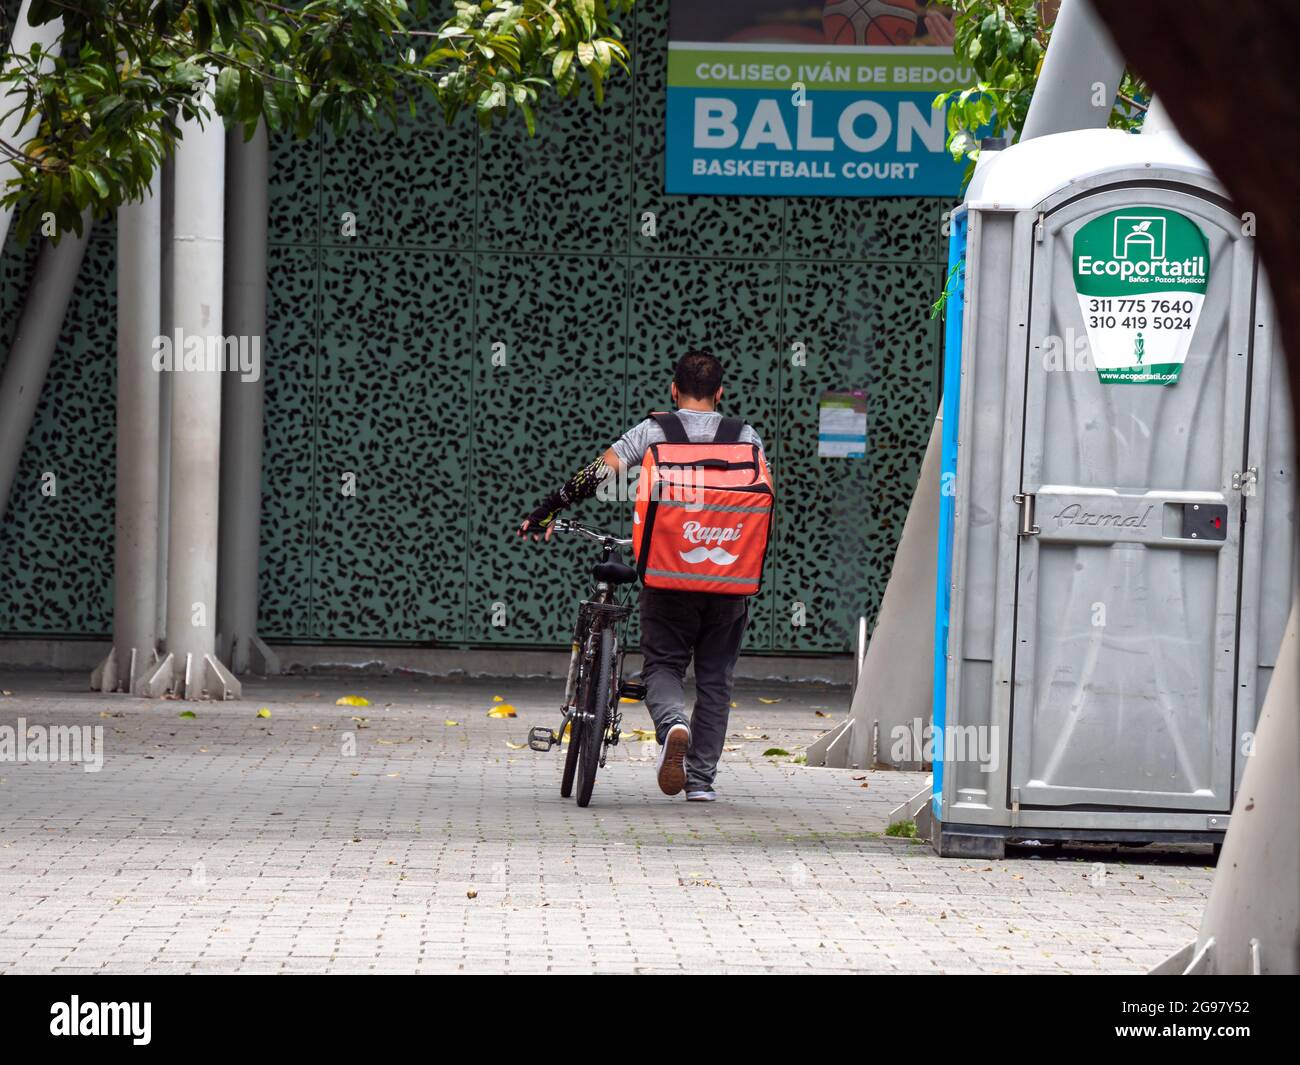 Medellin, Colombia - Luglio 21 2021: Latin Men cammina accanto alla sua bicicletta con 'Rappi' zaino in un parco con un segno che dice : 'Balon' Foto Stock